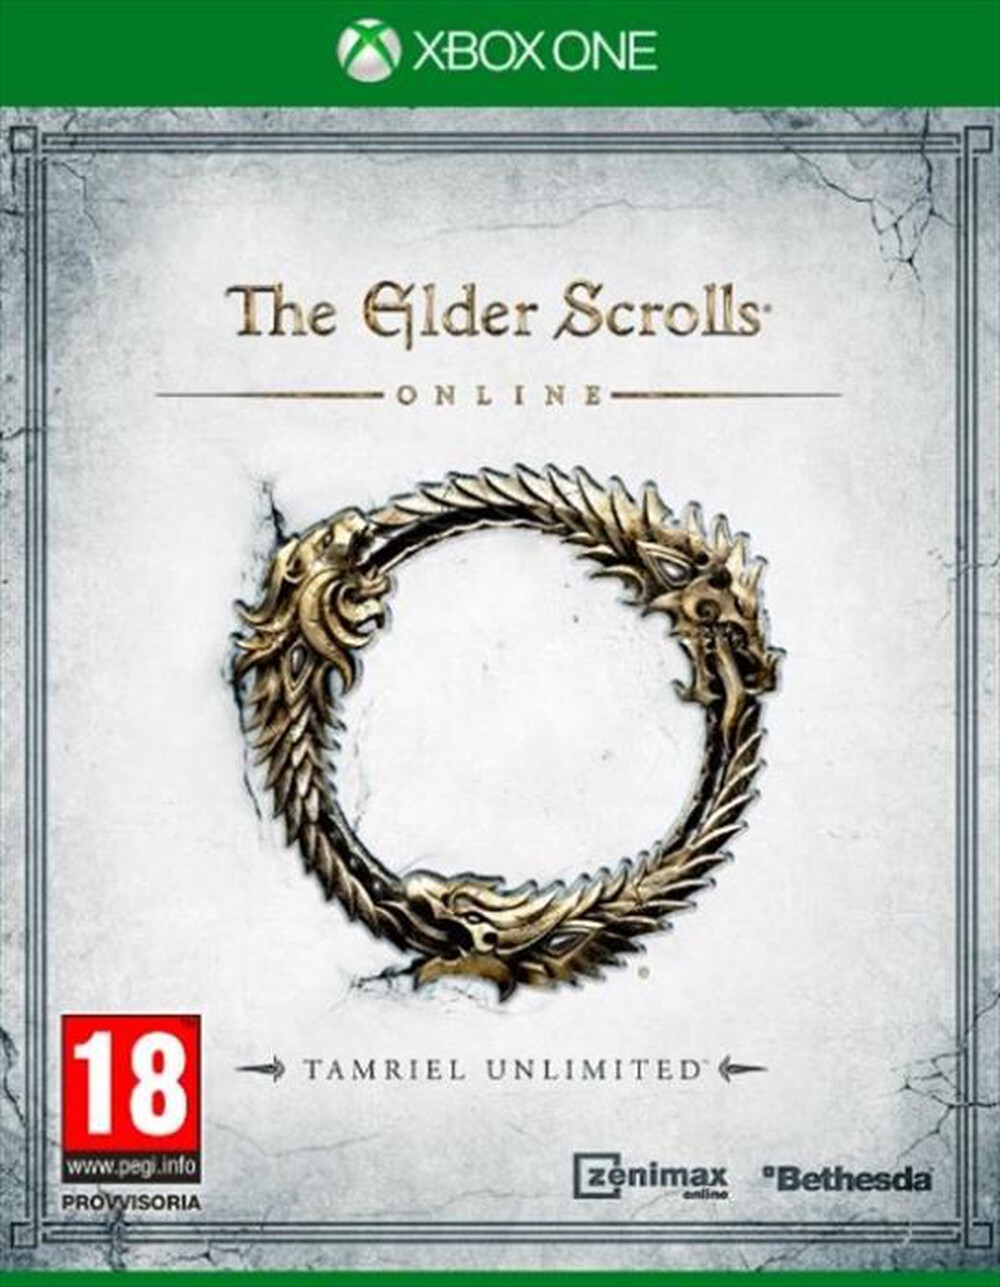 "KOCH MEDIA - The Elder Scrolls Online - Tamriel Unlimited XOne"